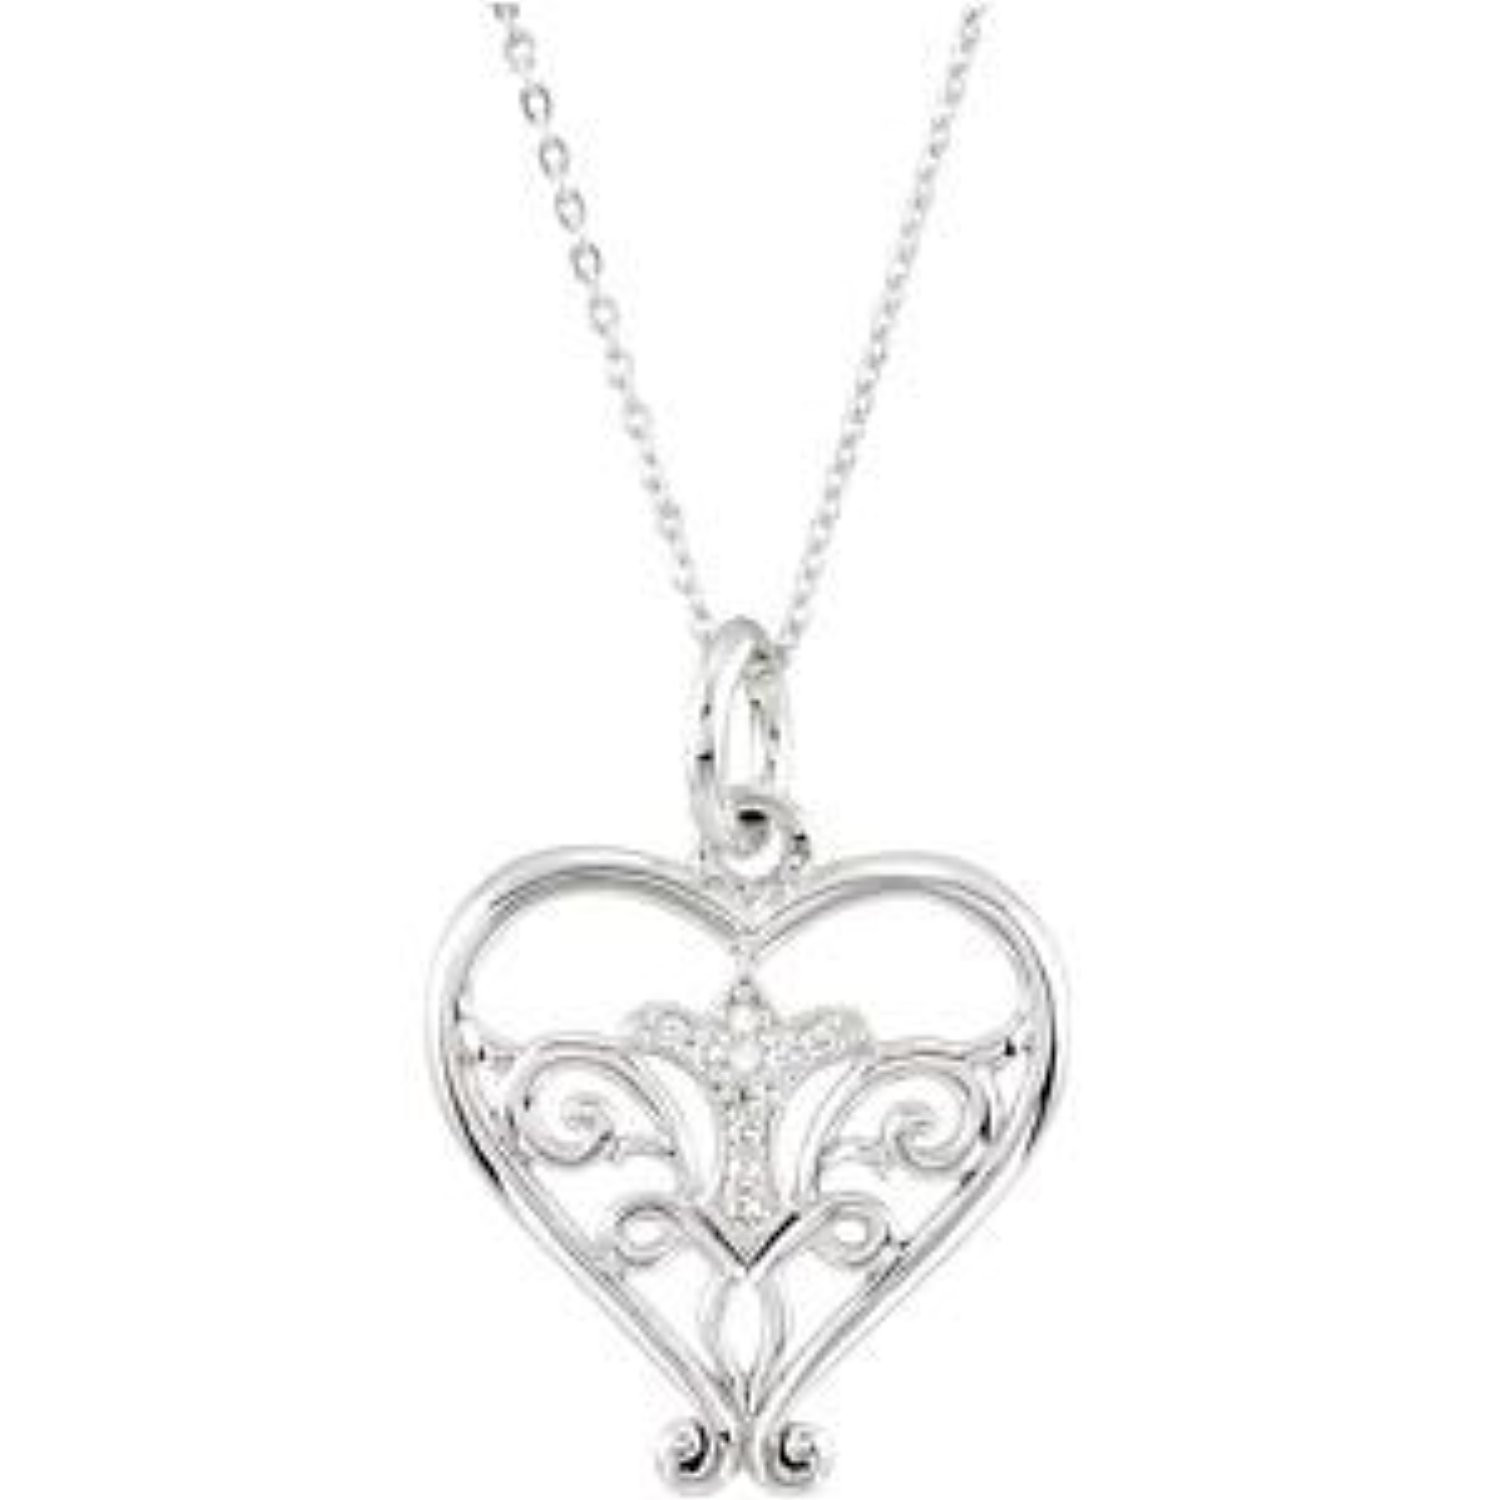 Walmart Heart Necklace
 Bedrock Jewelry Pure in Heart Necklace Walmart